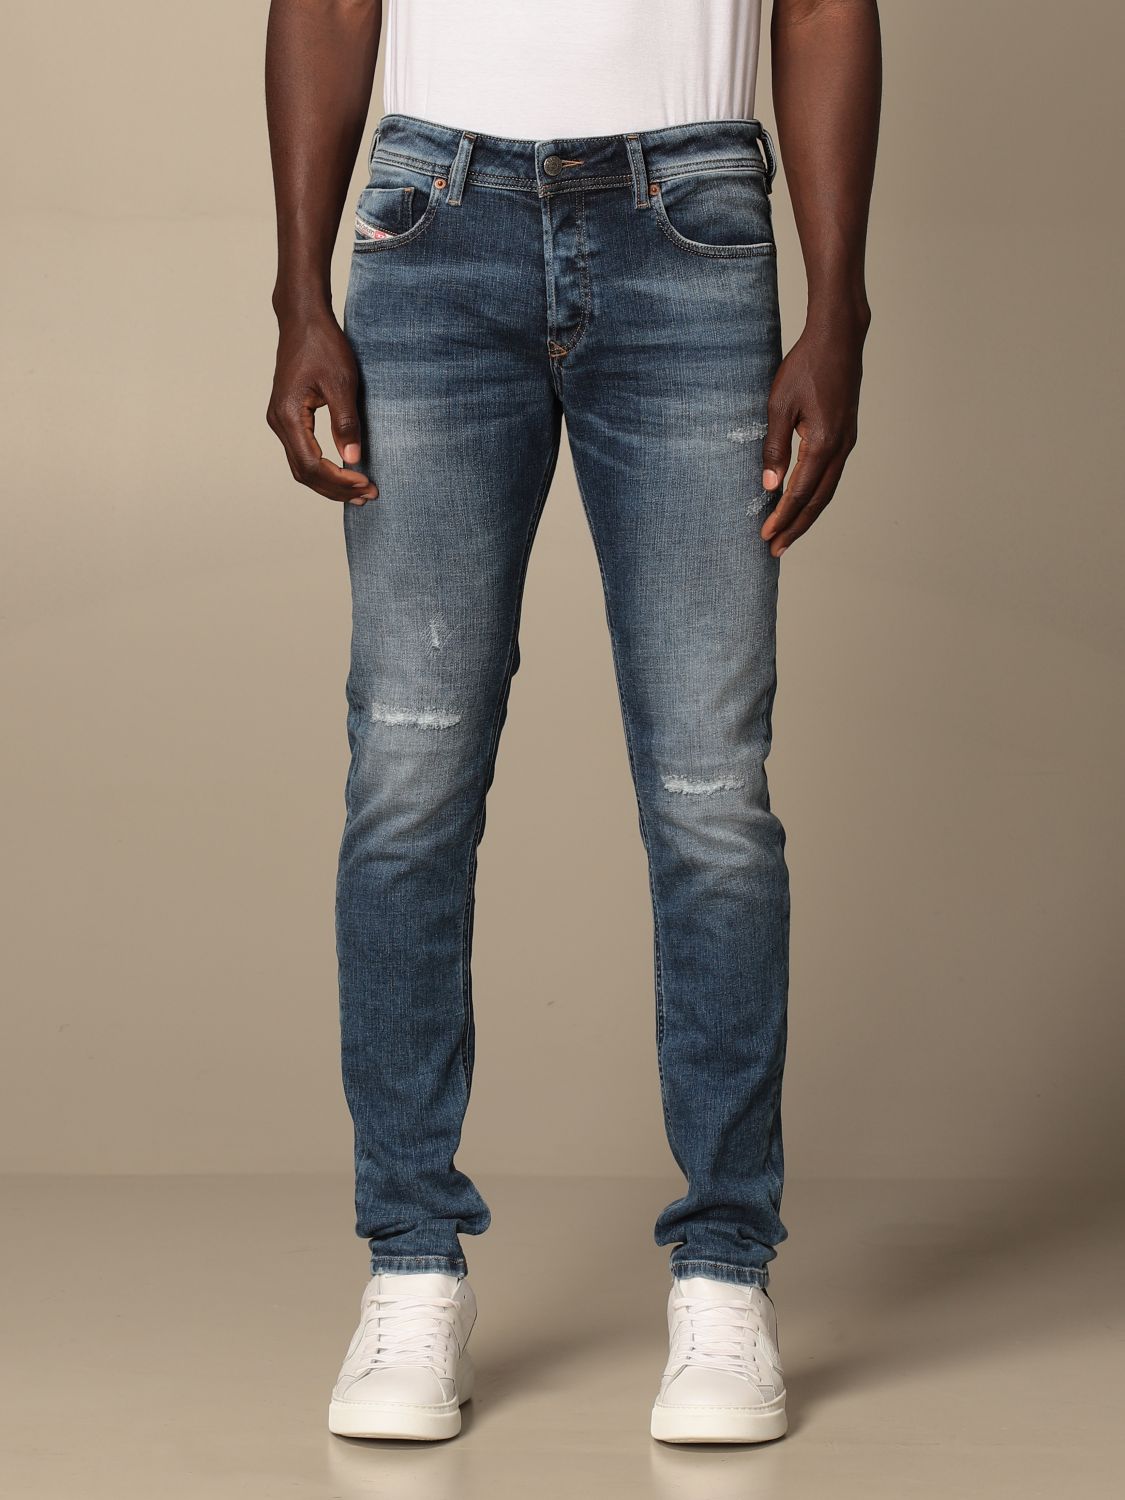 DIESEL: Sleenker-x 5-pocket skinny stretch jeans - Denim | Diesel jeans ...